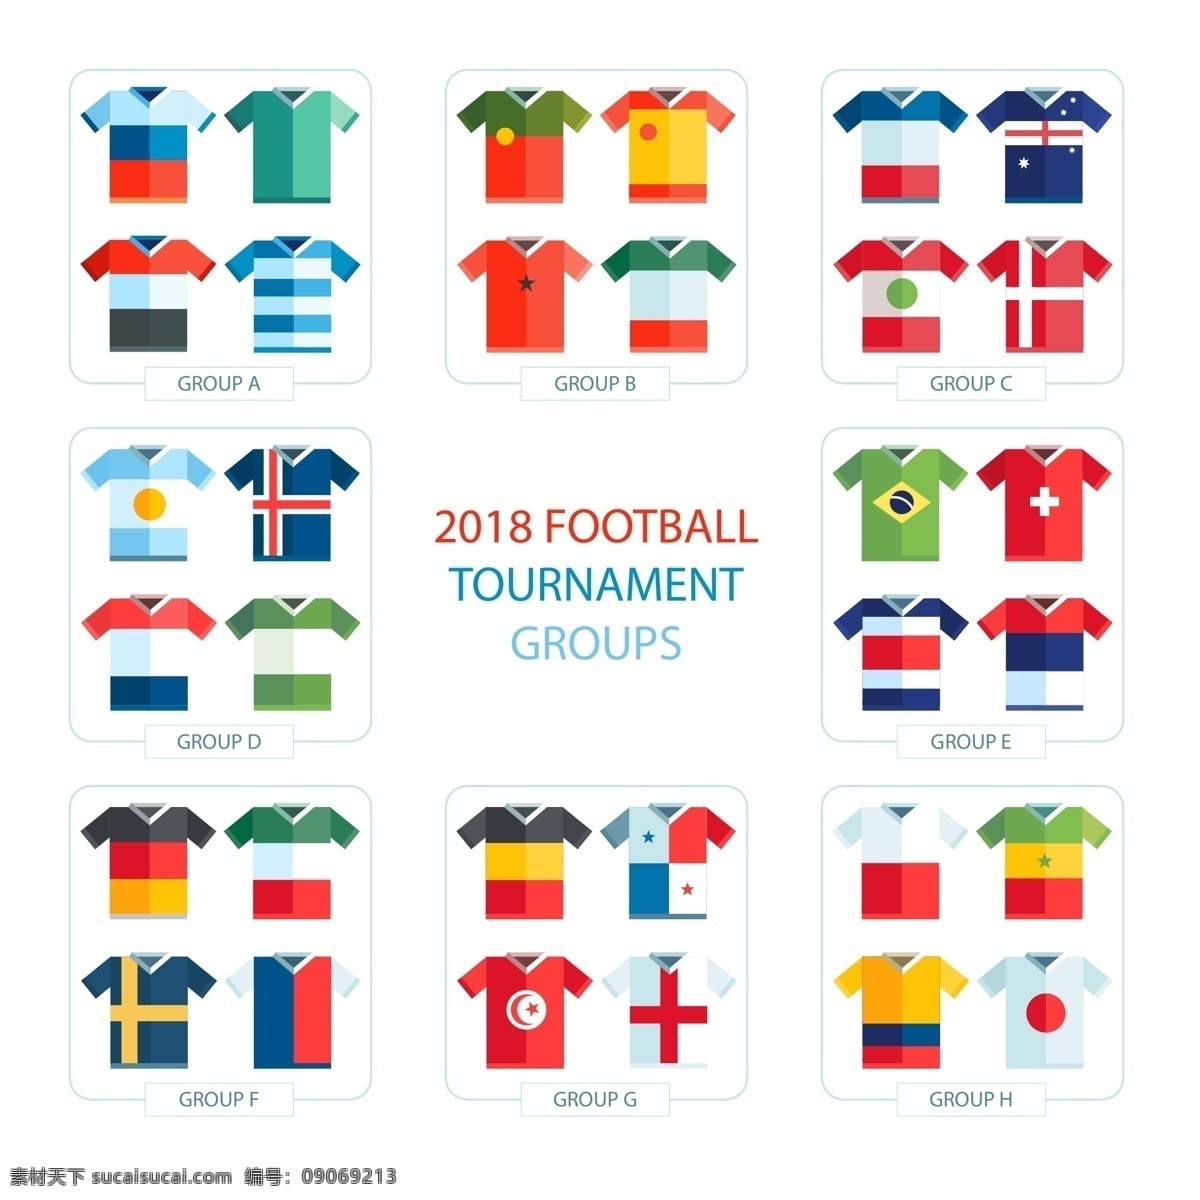 矢量 世界 足球 锦标赛 服装 世界杯 矢量素材 卡通 扁平 2018 俄罗斯 欧洲杯 比赛 体育 竞赛